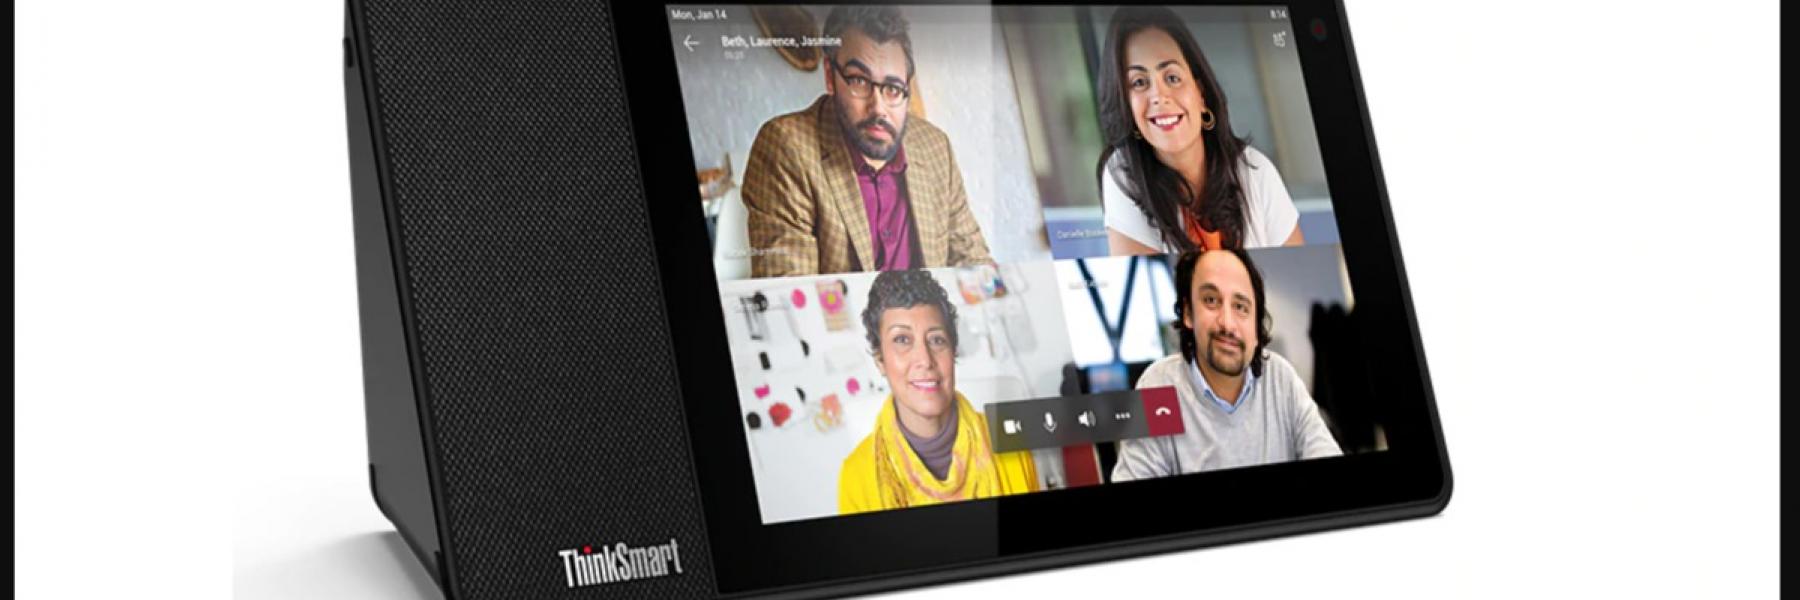  مايكروسوفت تقدم مزايا جديدة لمستخدمي تطبيقات الفيديو كونفرانس